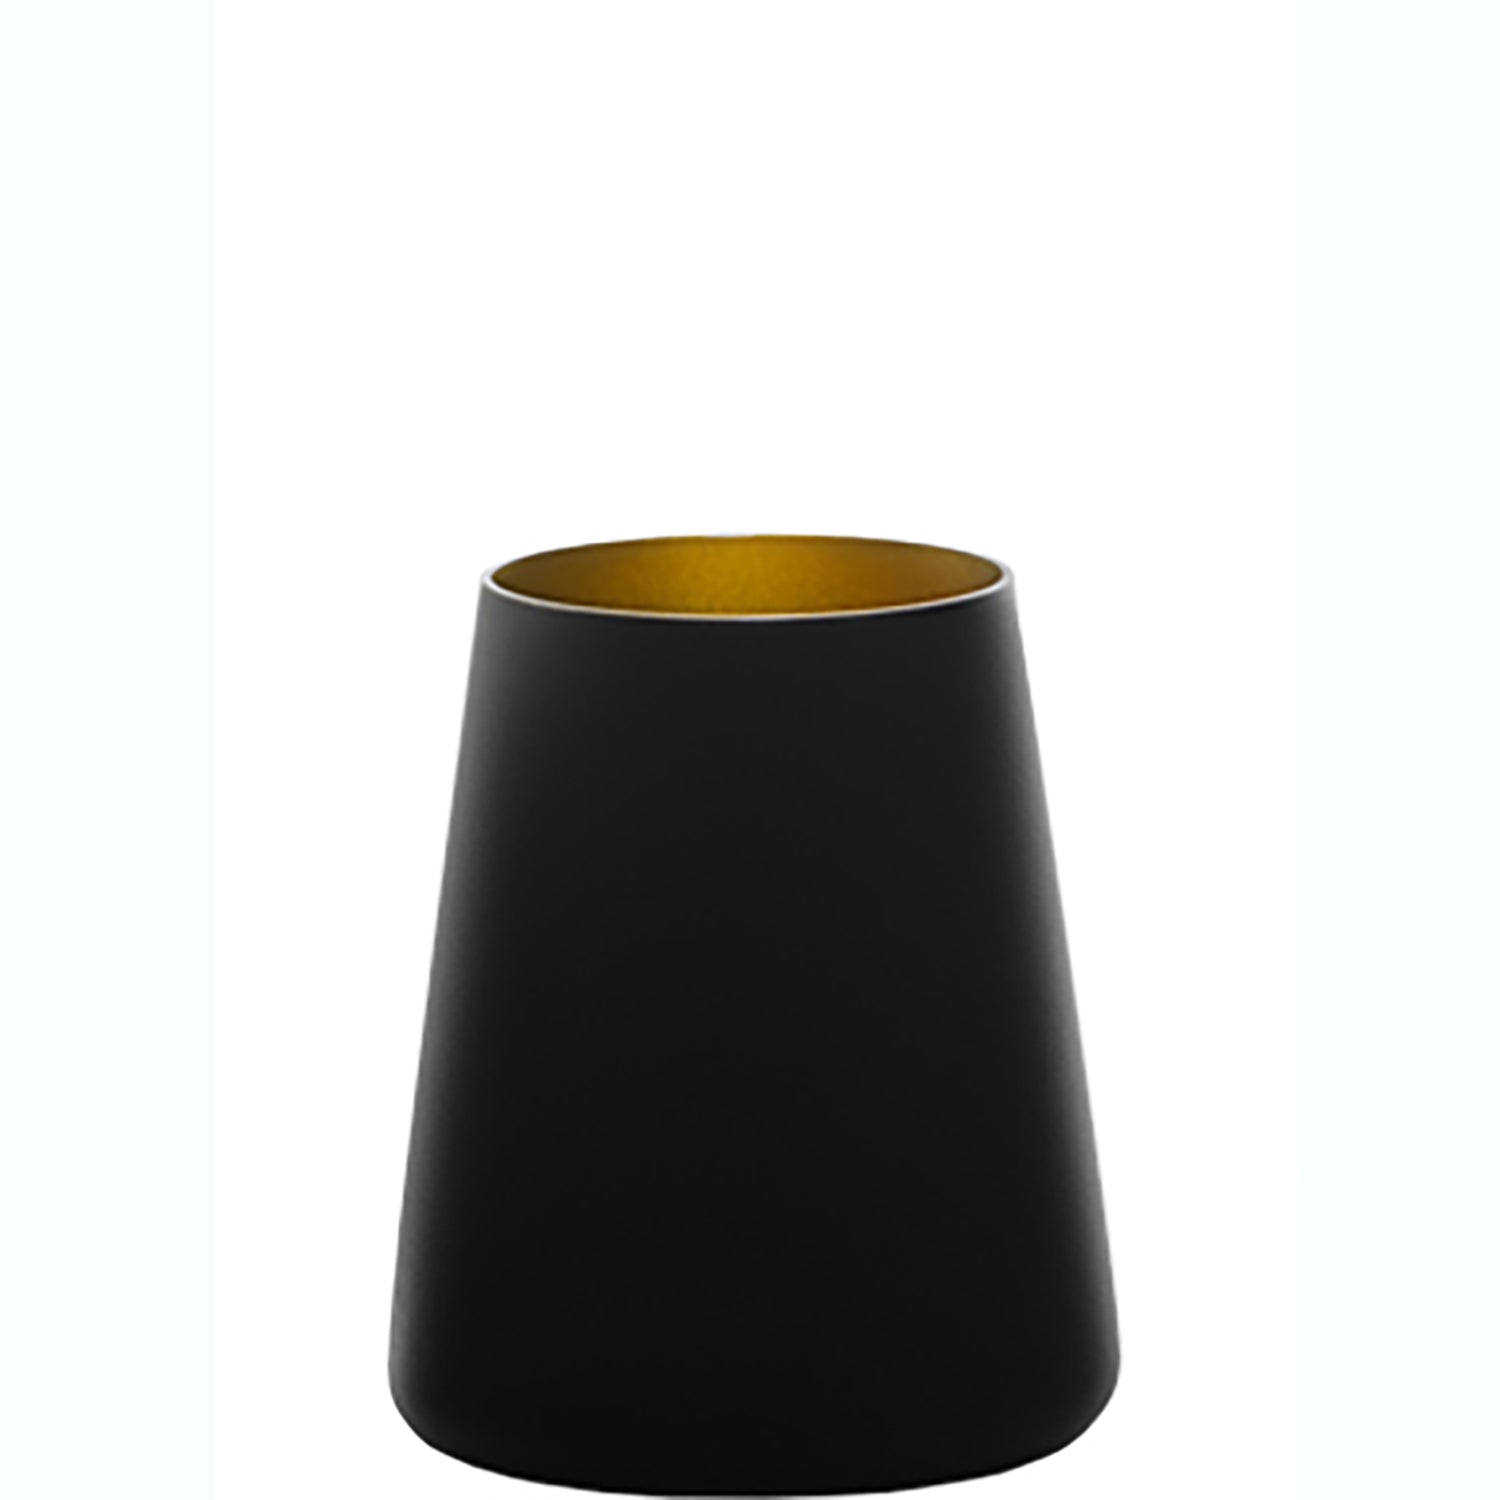 Stoelzle® Power Stemless Black/Gold Glass (set of 6)